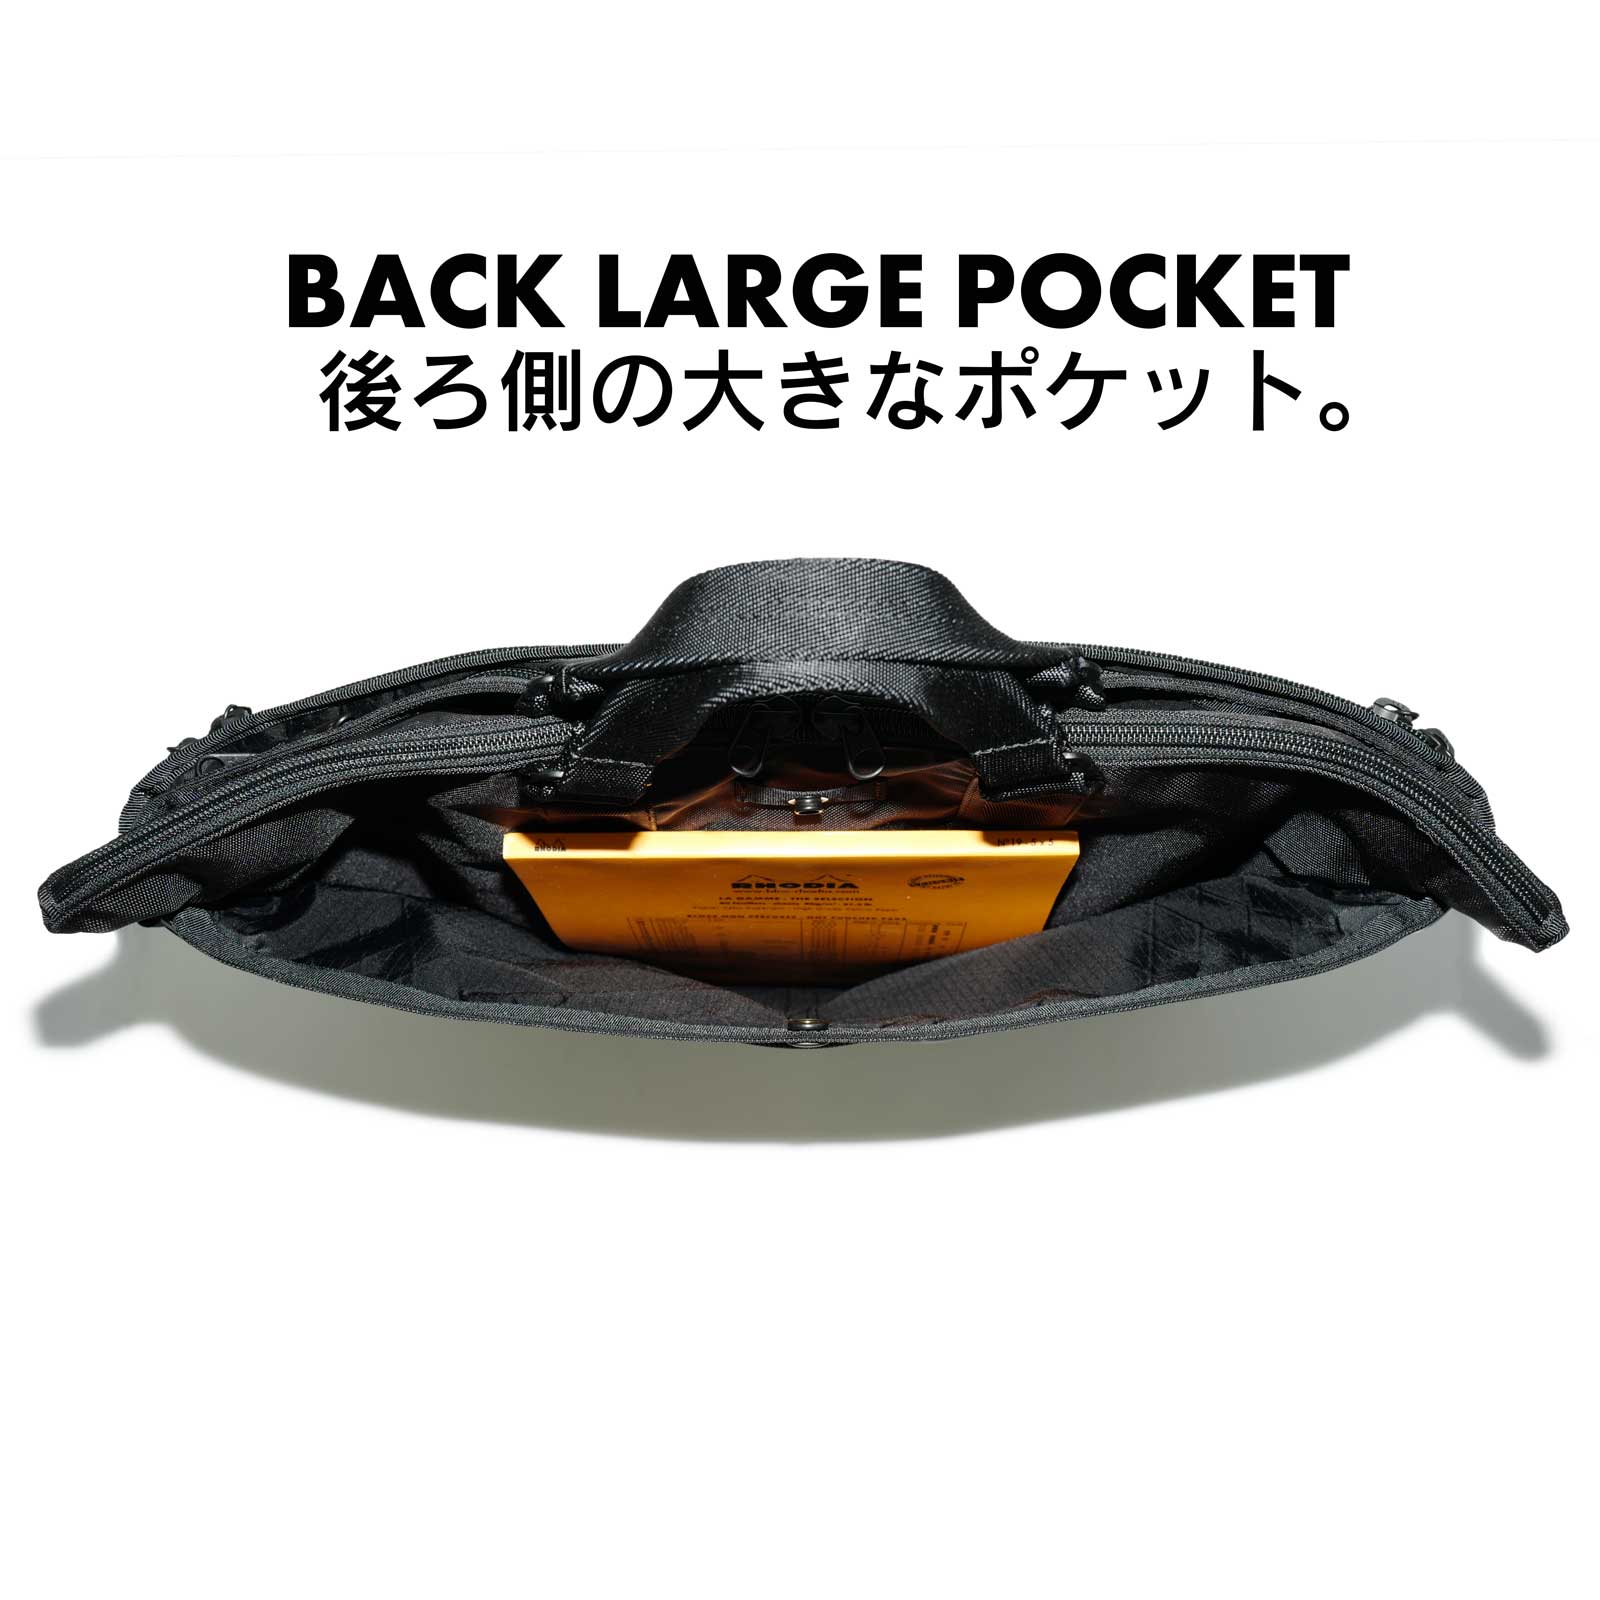 機能的なポケットを多く装備したB4ビジネスバッグ